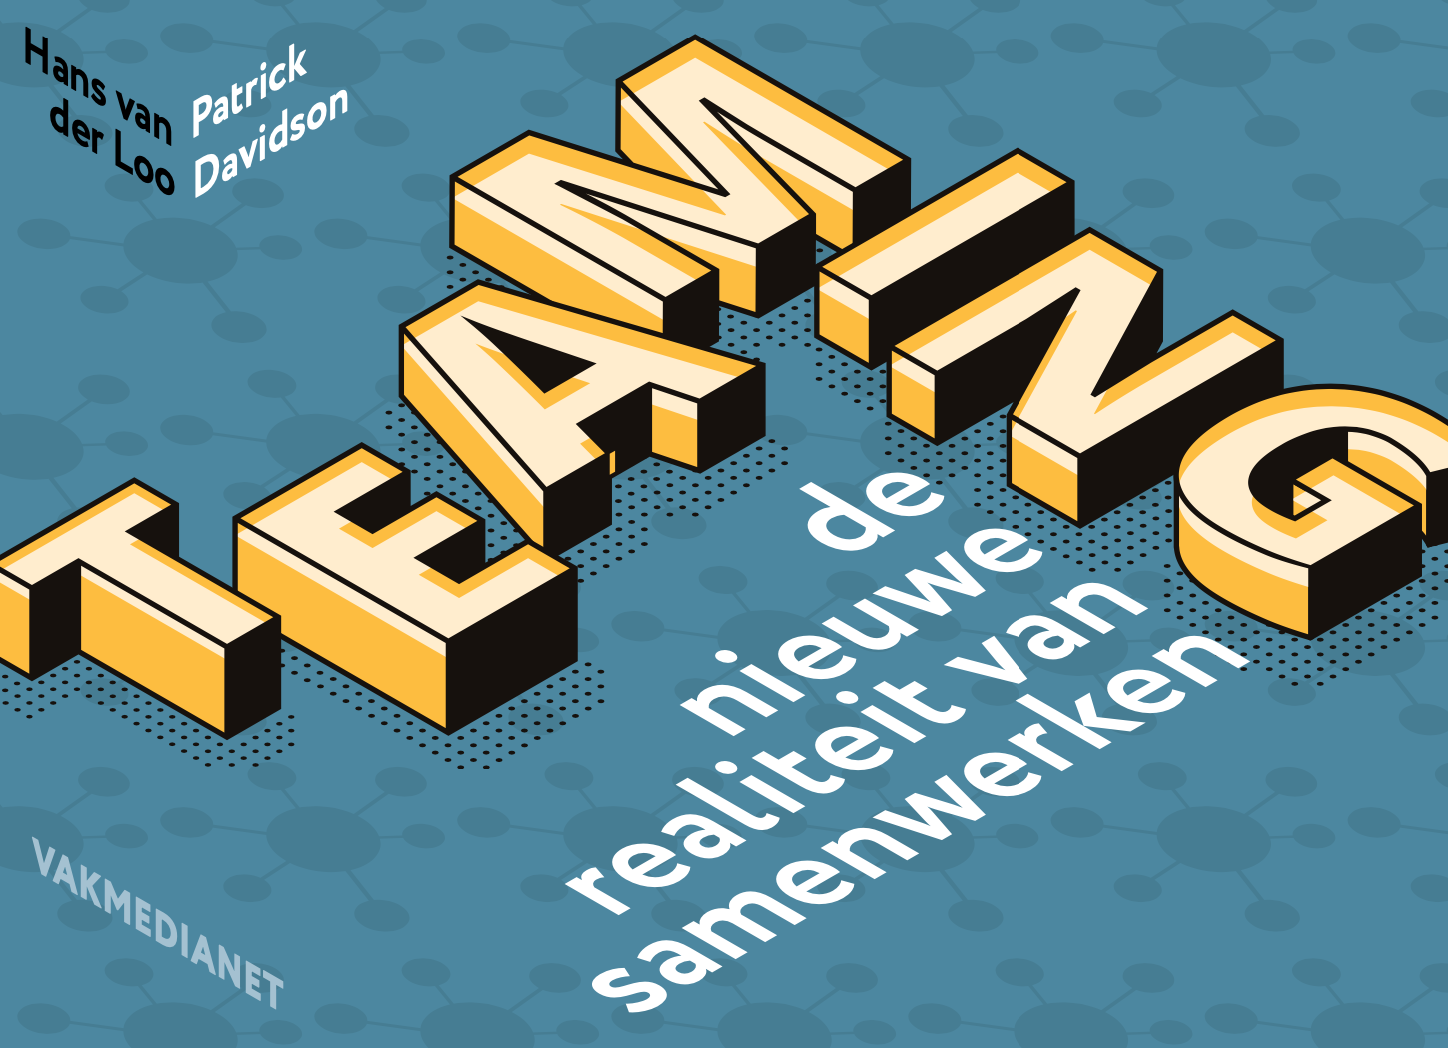 Teaming - de nieuwe realiteit van samenwerken - Patrick Davidson & Hans van der Loo - boekcover (concept) - Hein van Putten